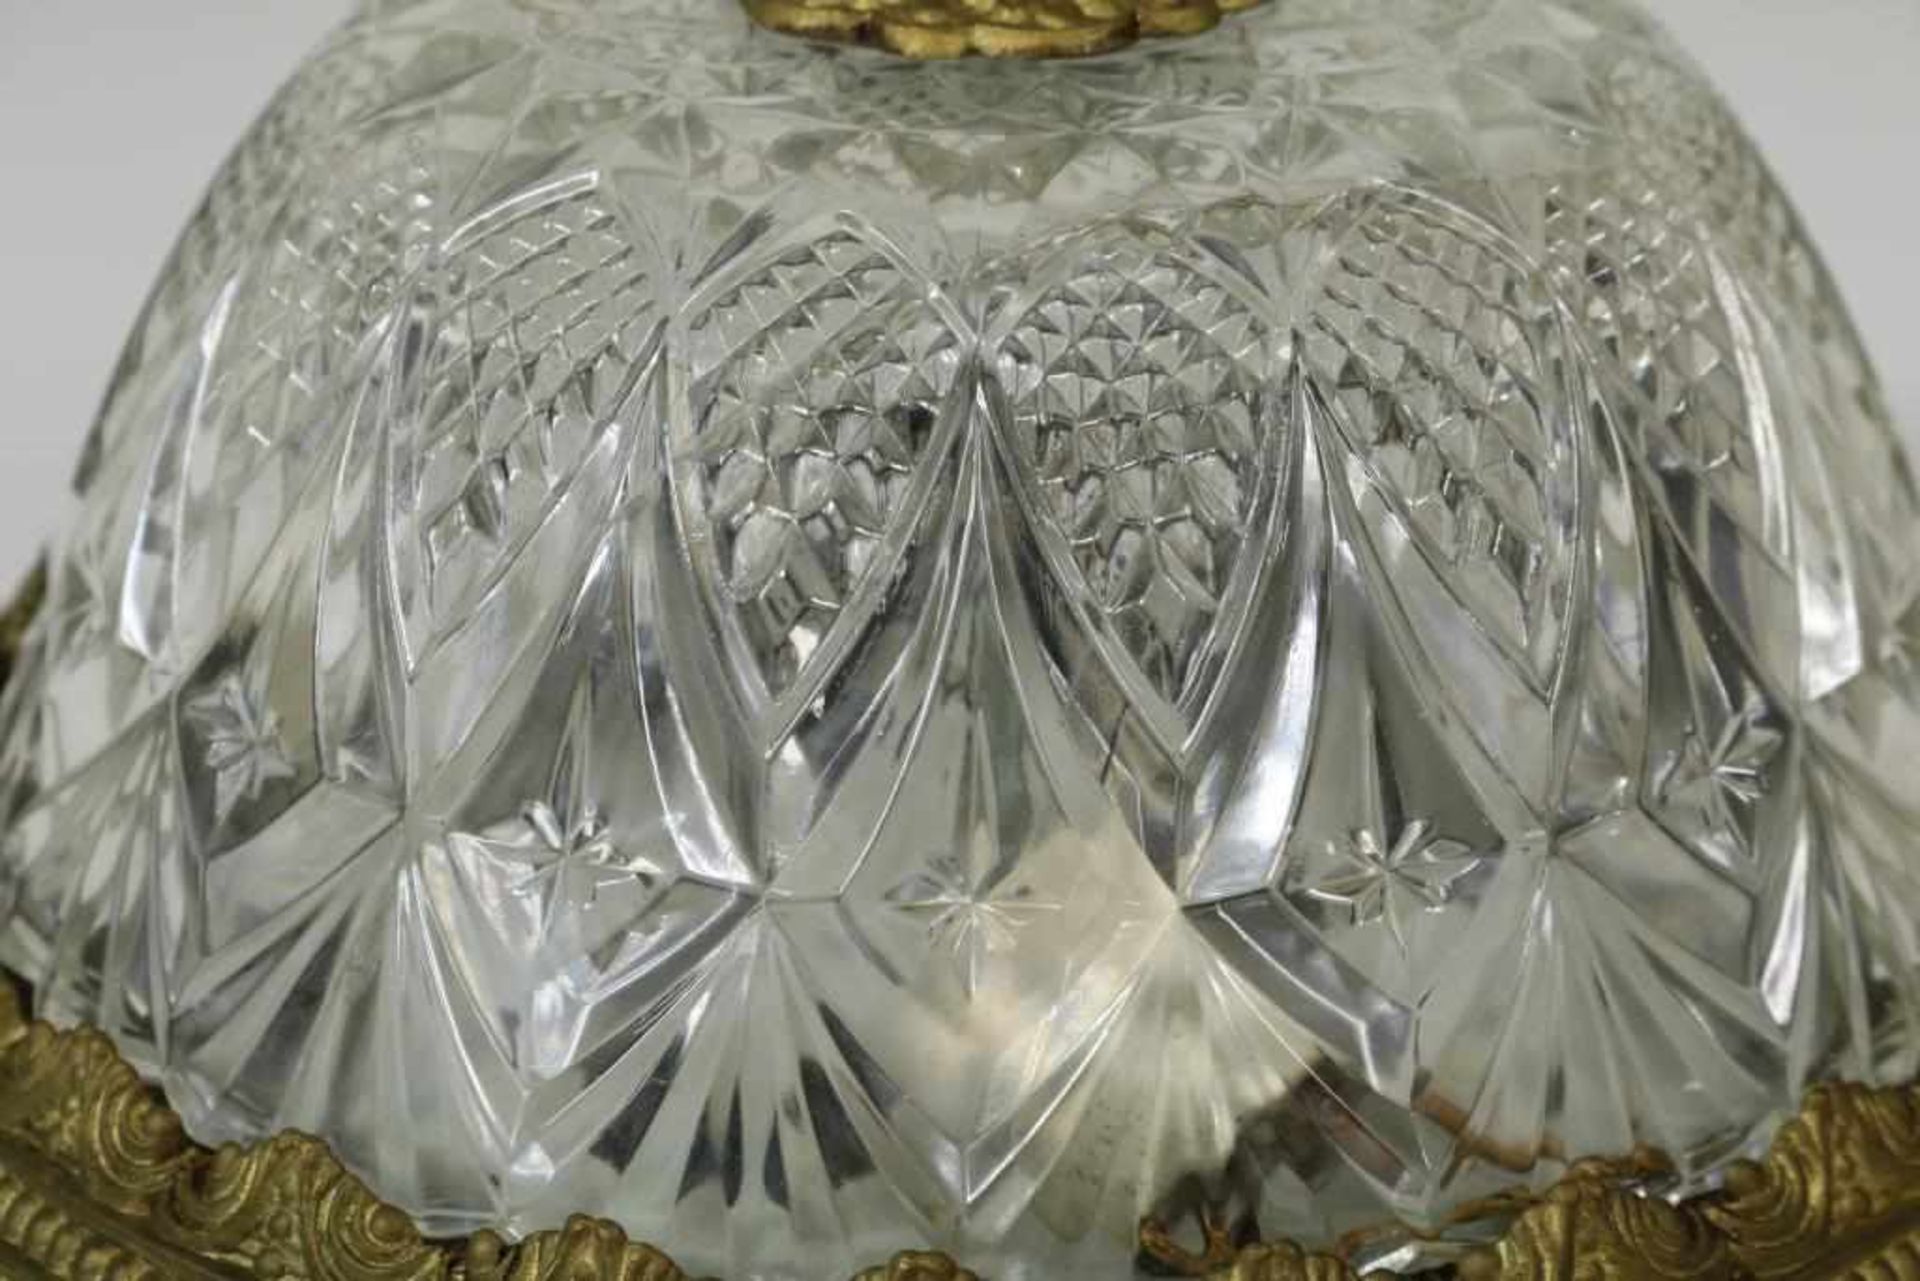 Ronde kristallen plafonierre in messing montuur, diam. 36 cm. - Bild 2 aus 2